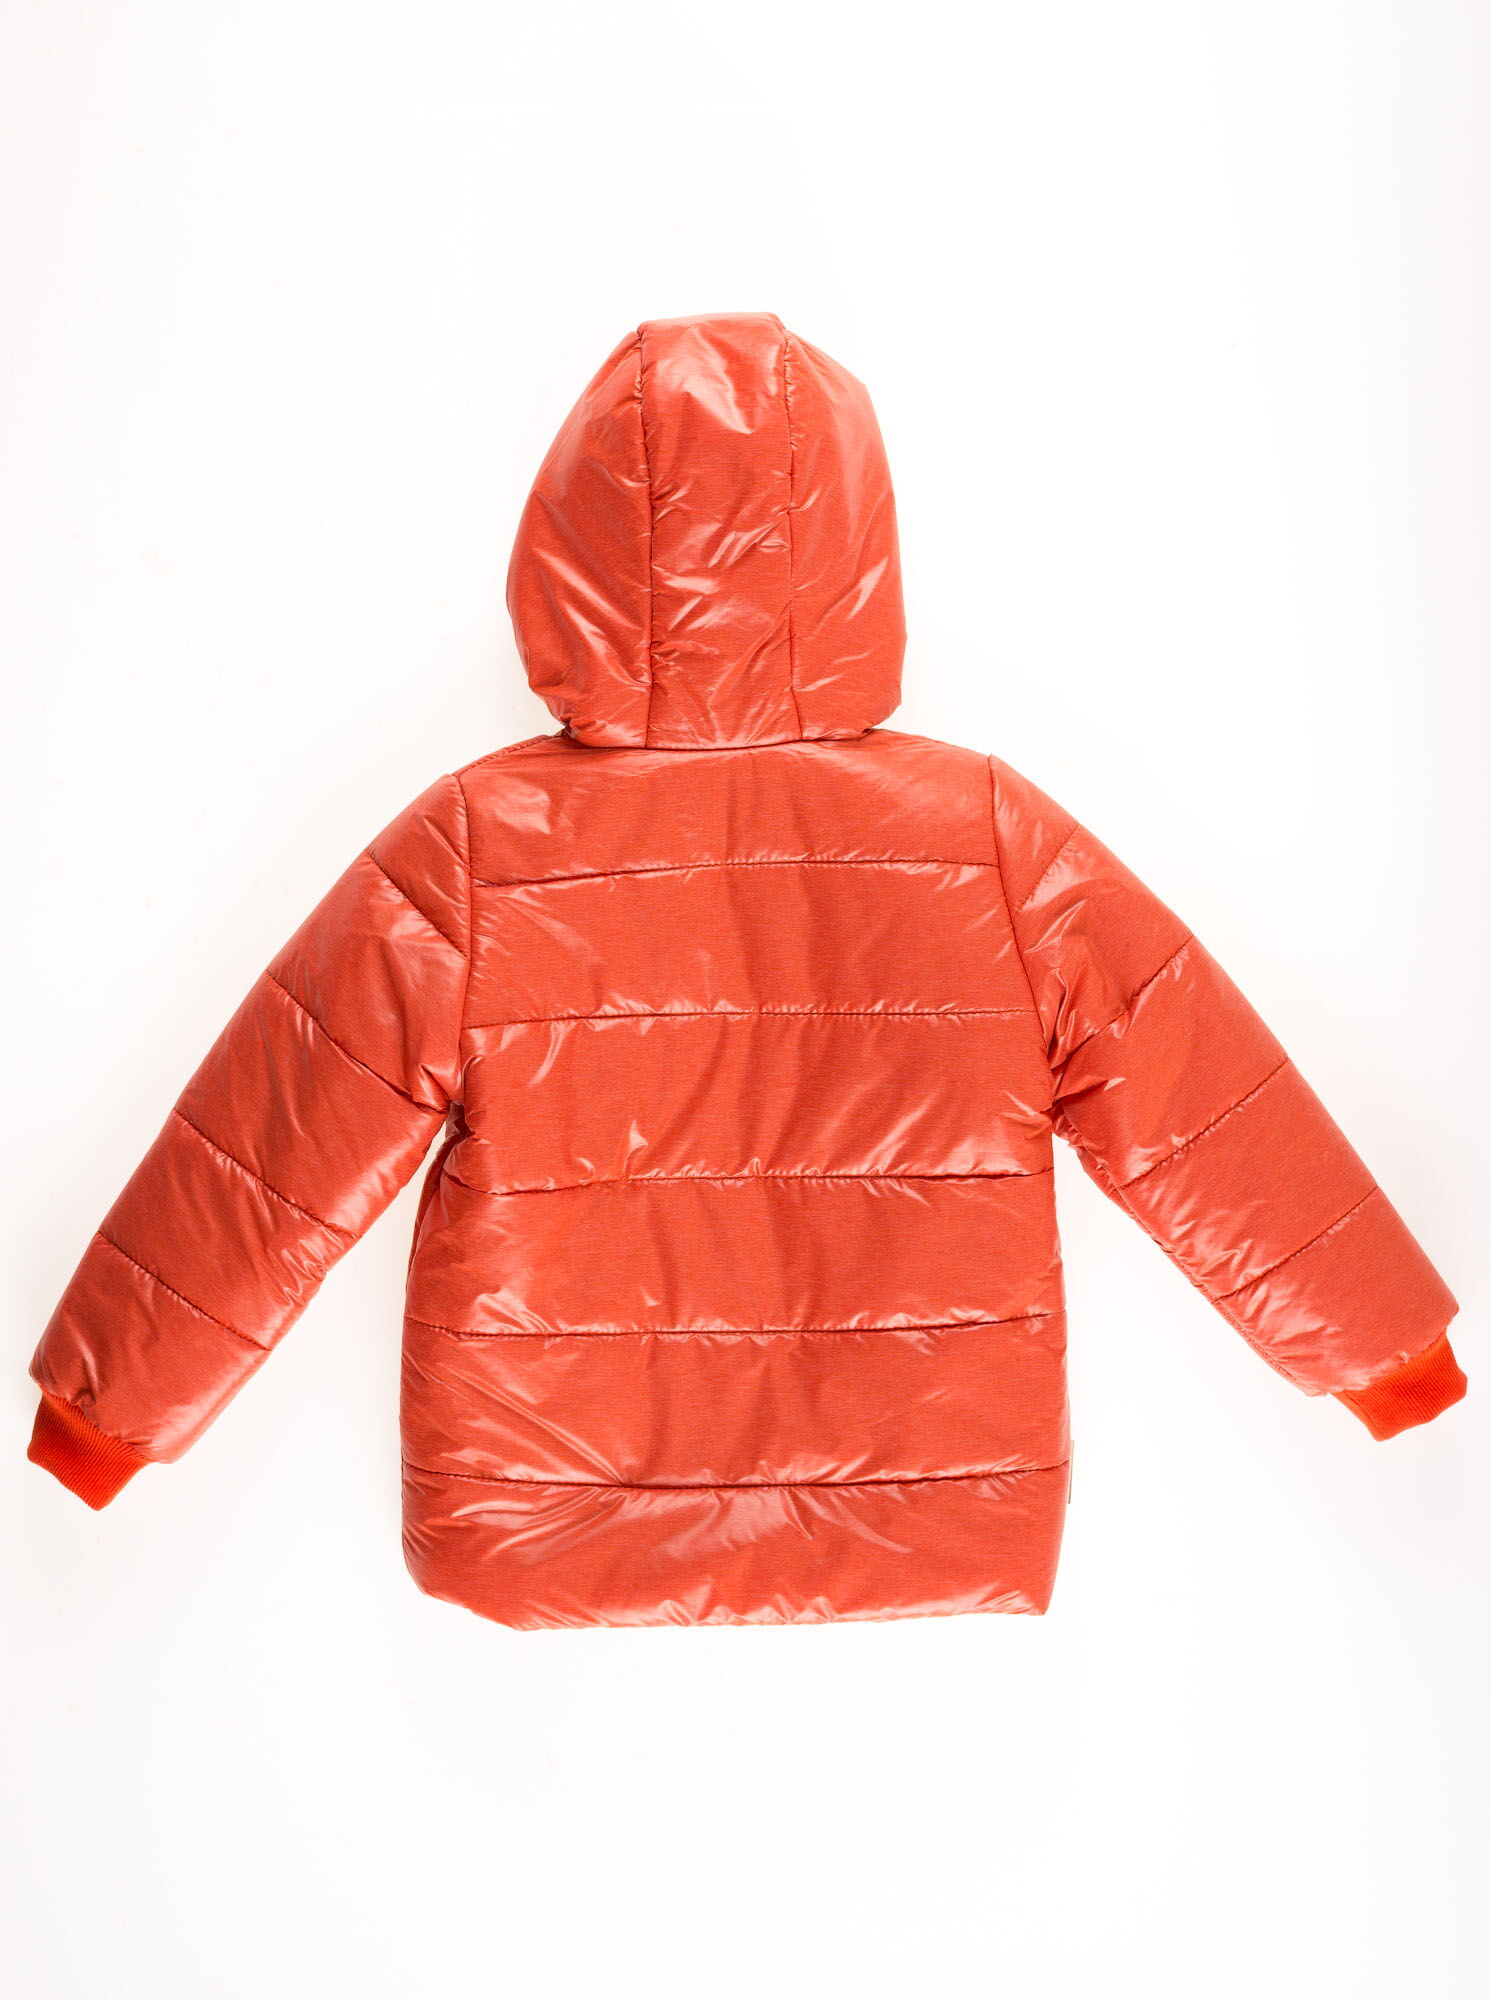 Куртка для мальчика ОДЯГАЙКО оранжевый 22105О - размеры